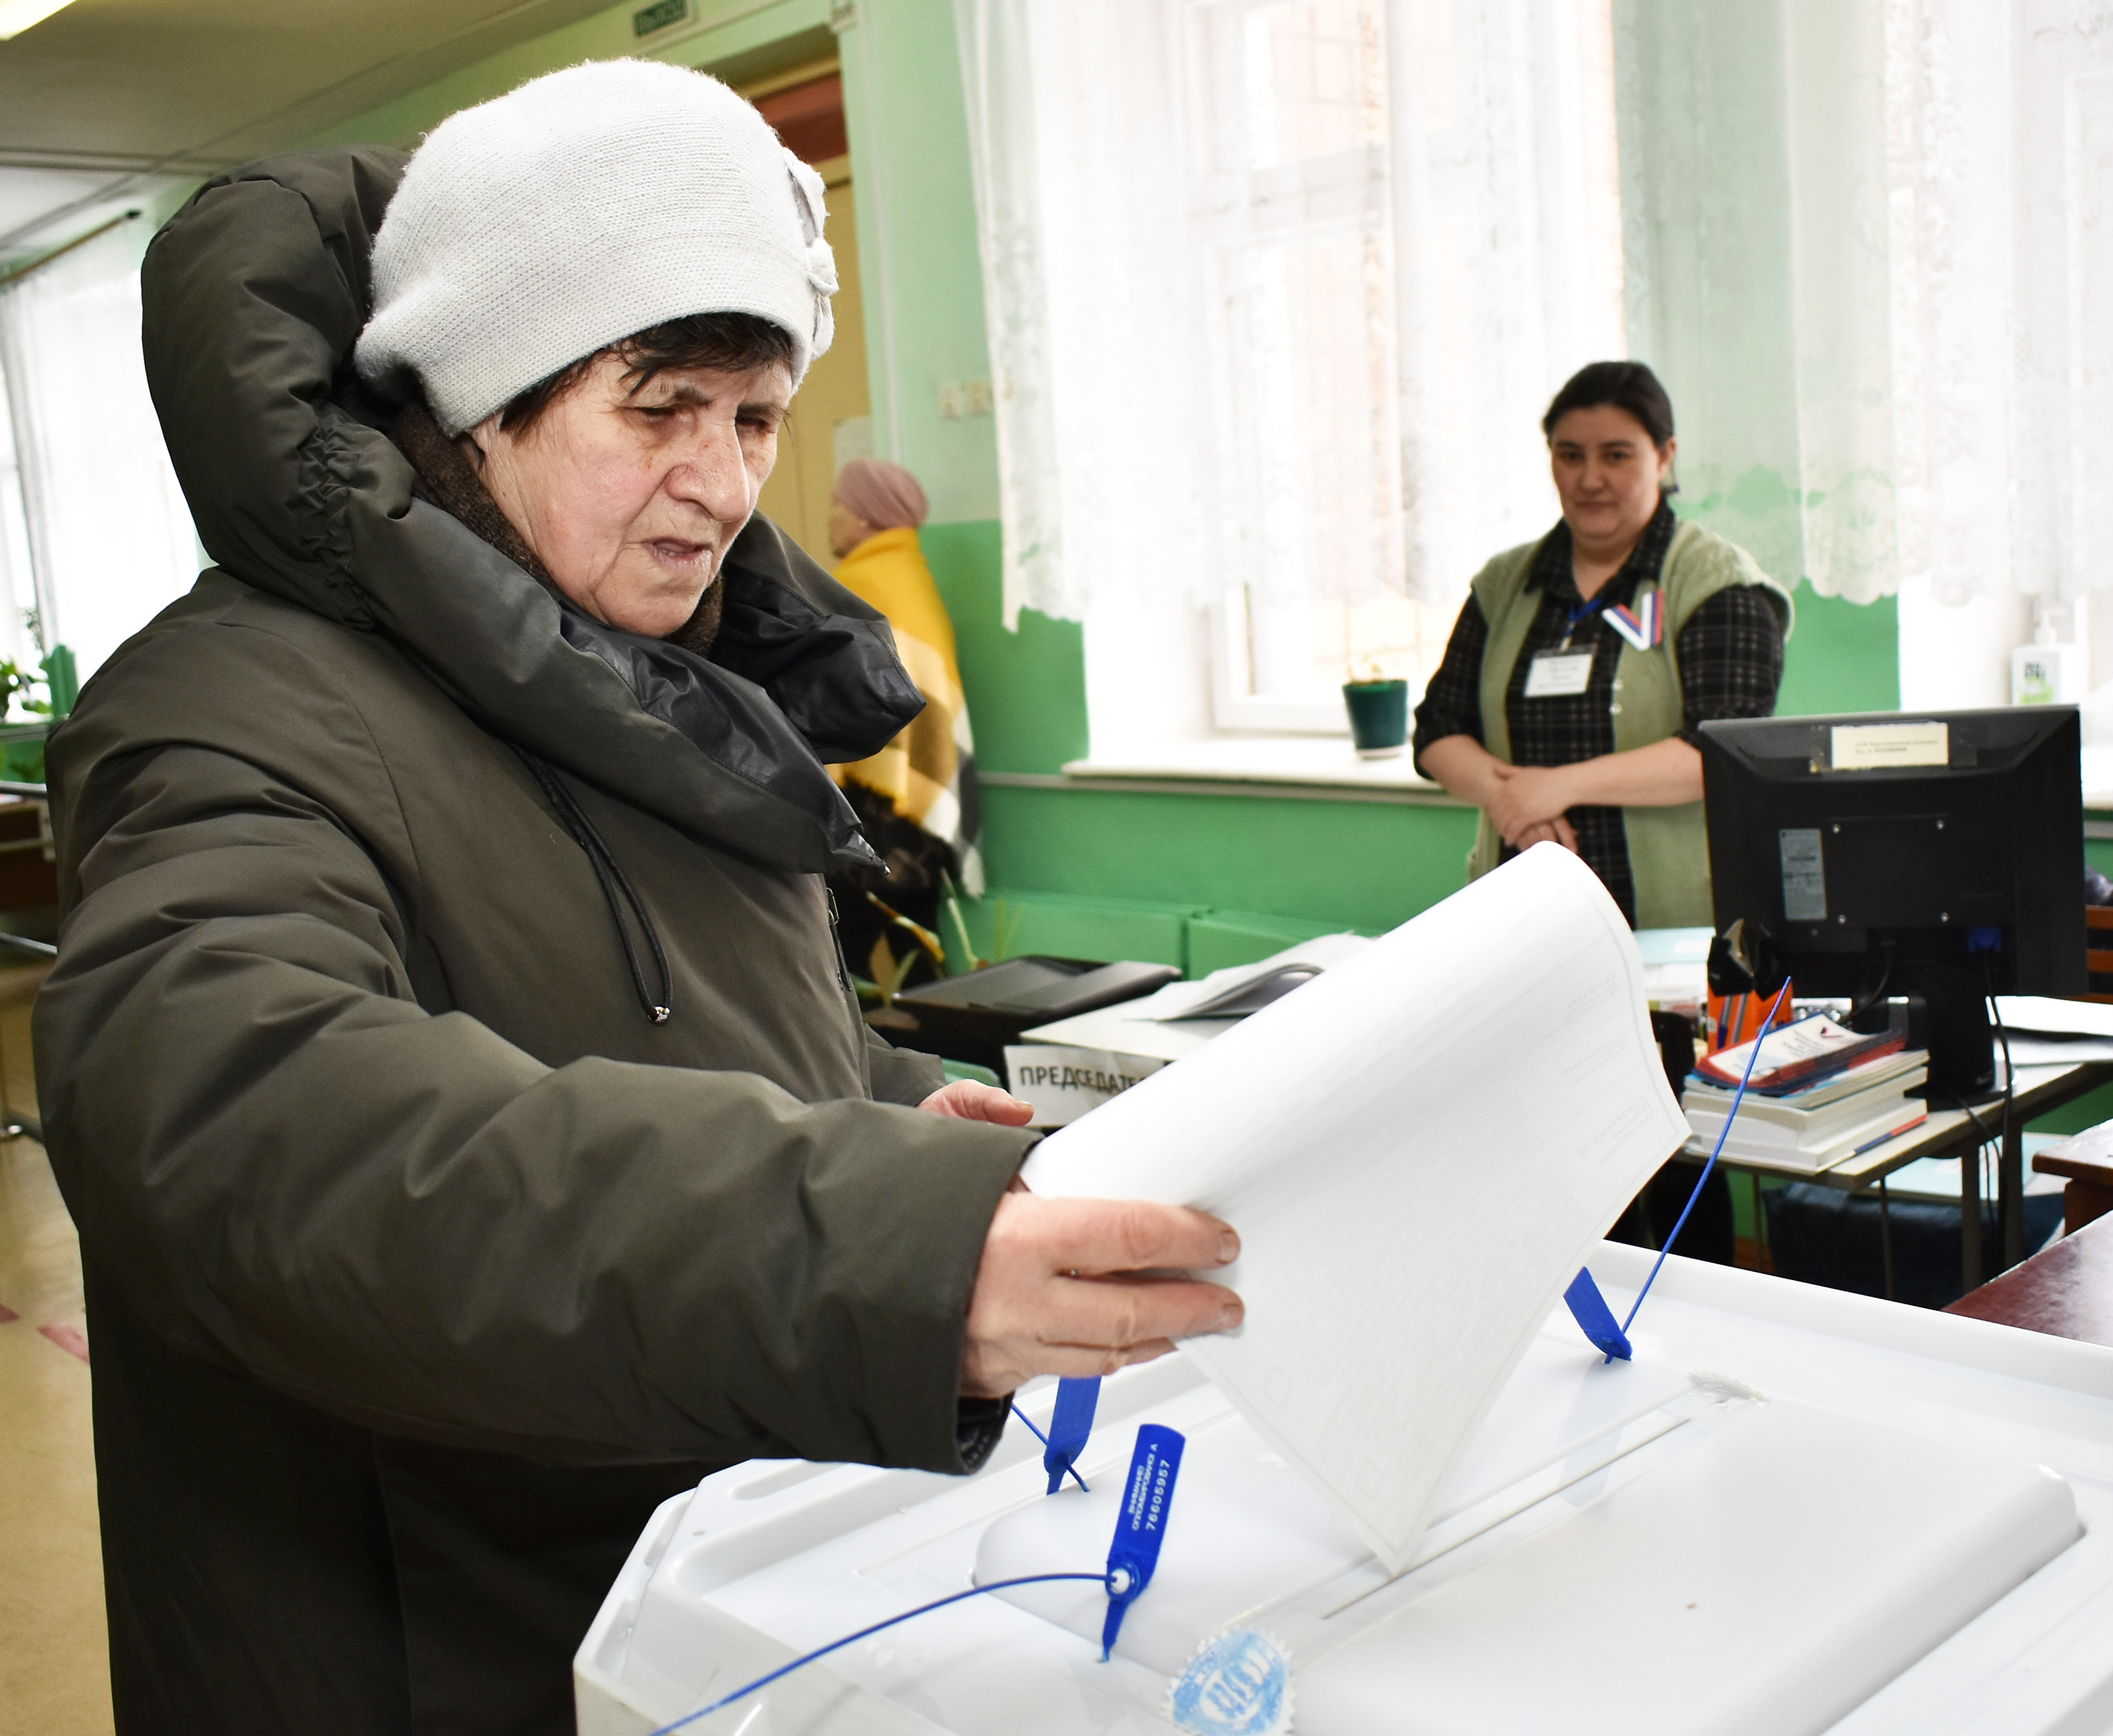 Жители деревни Талалаевка голосуют и отмечают Масленицу